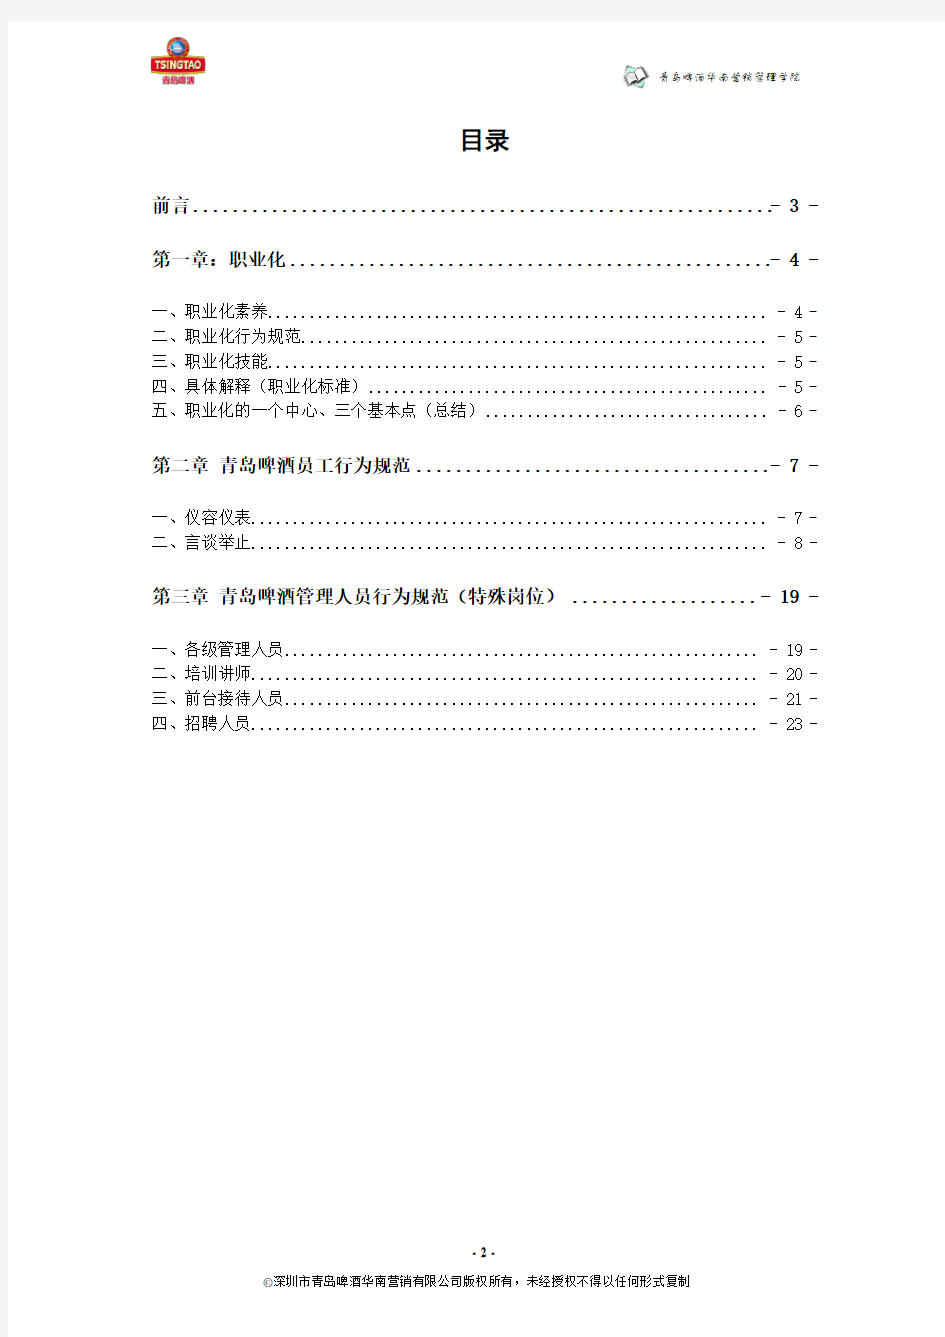 青岛啤酒员工职业化行为规范手册071028